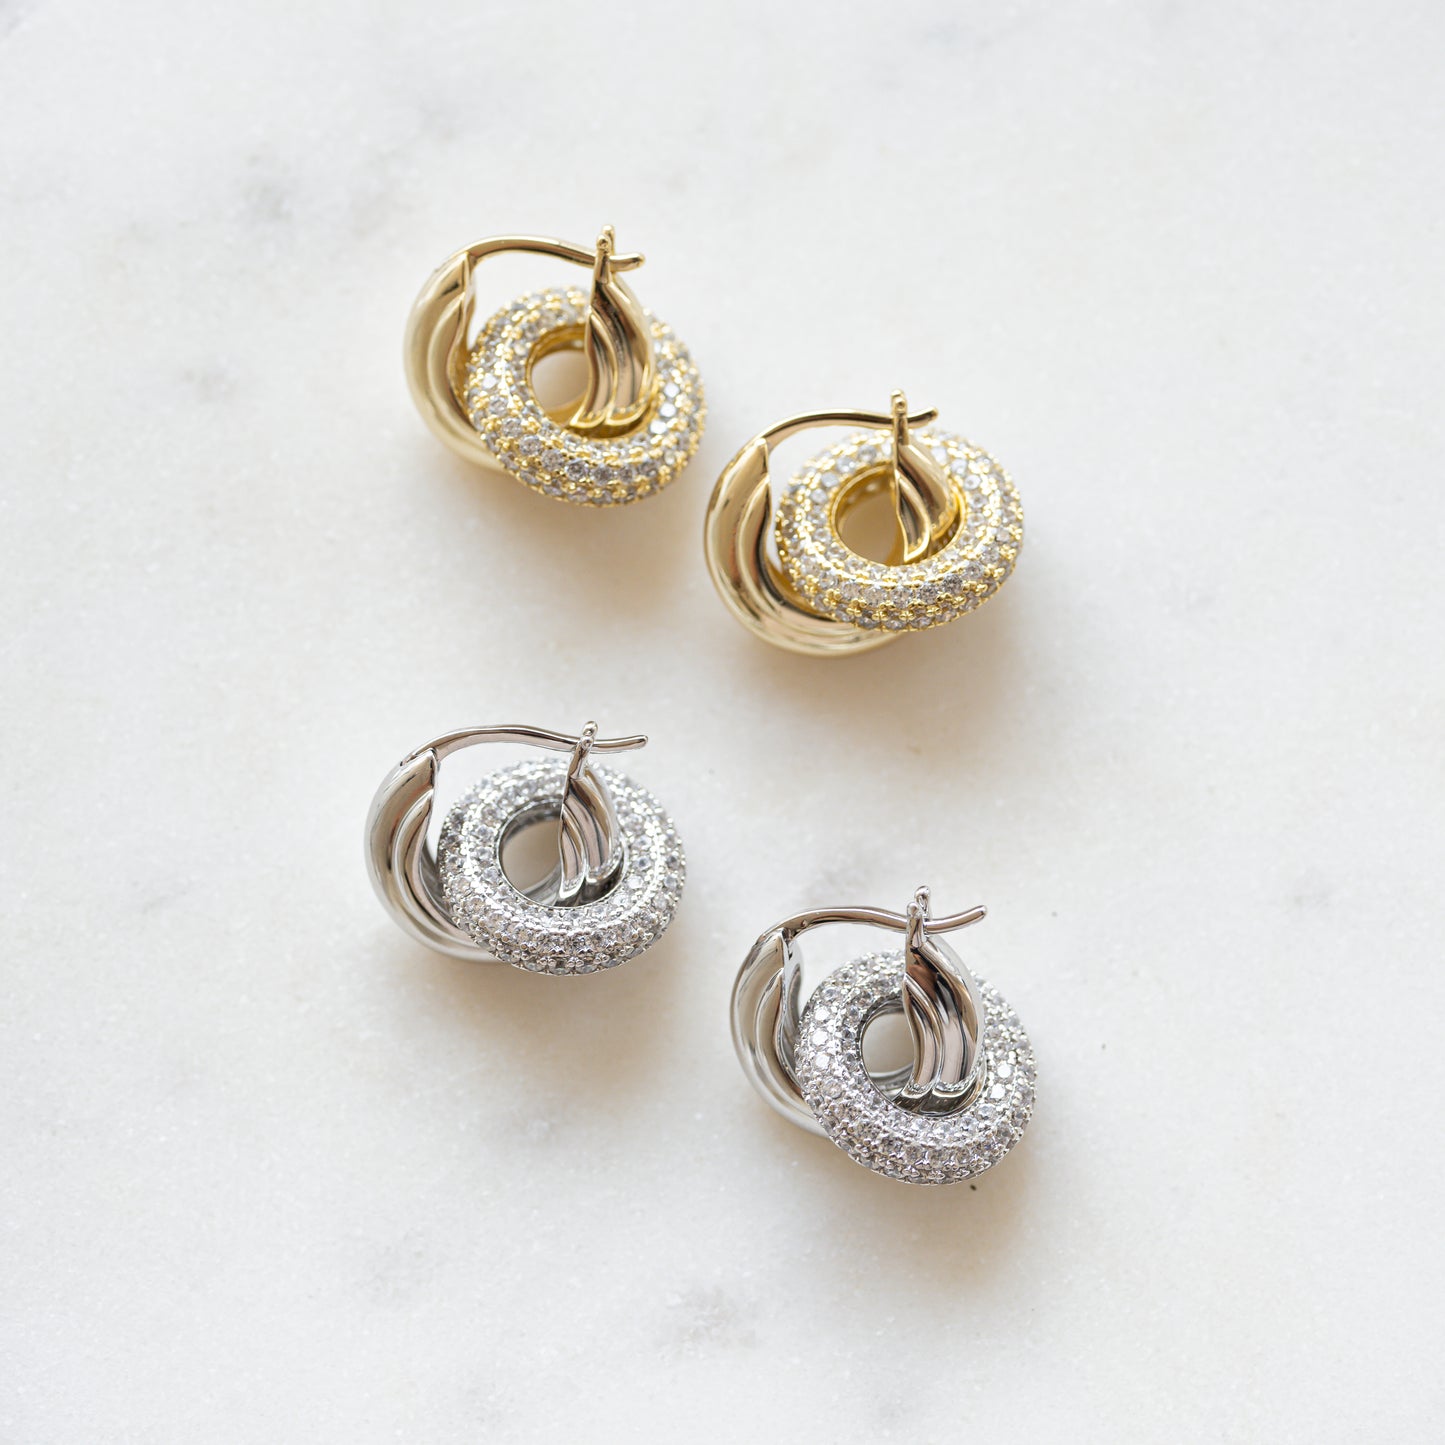 charm hoop earrings in gold or silver